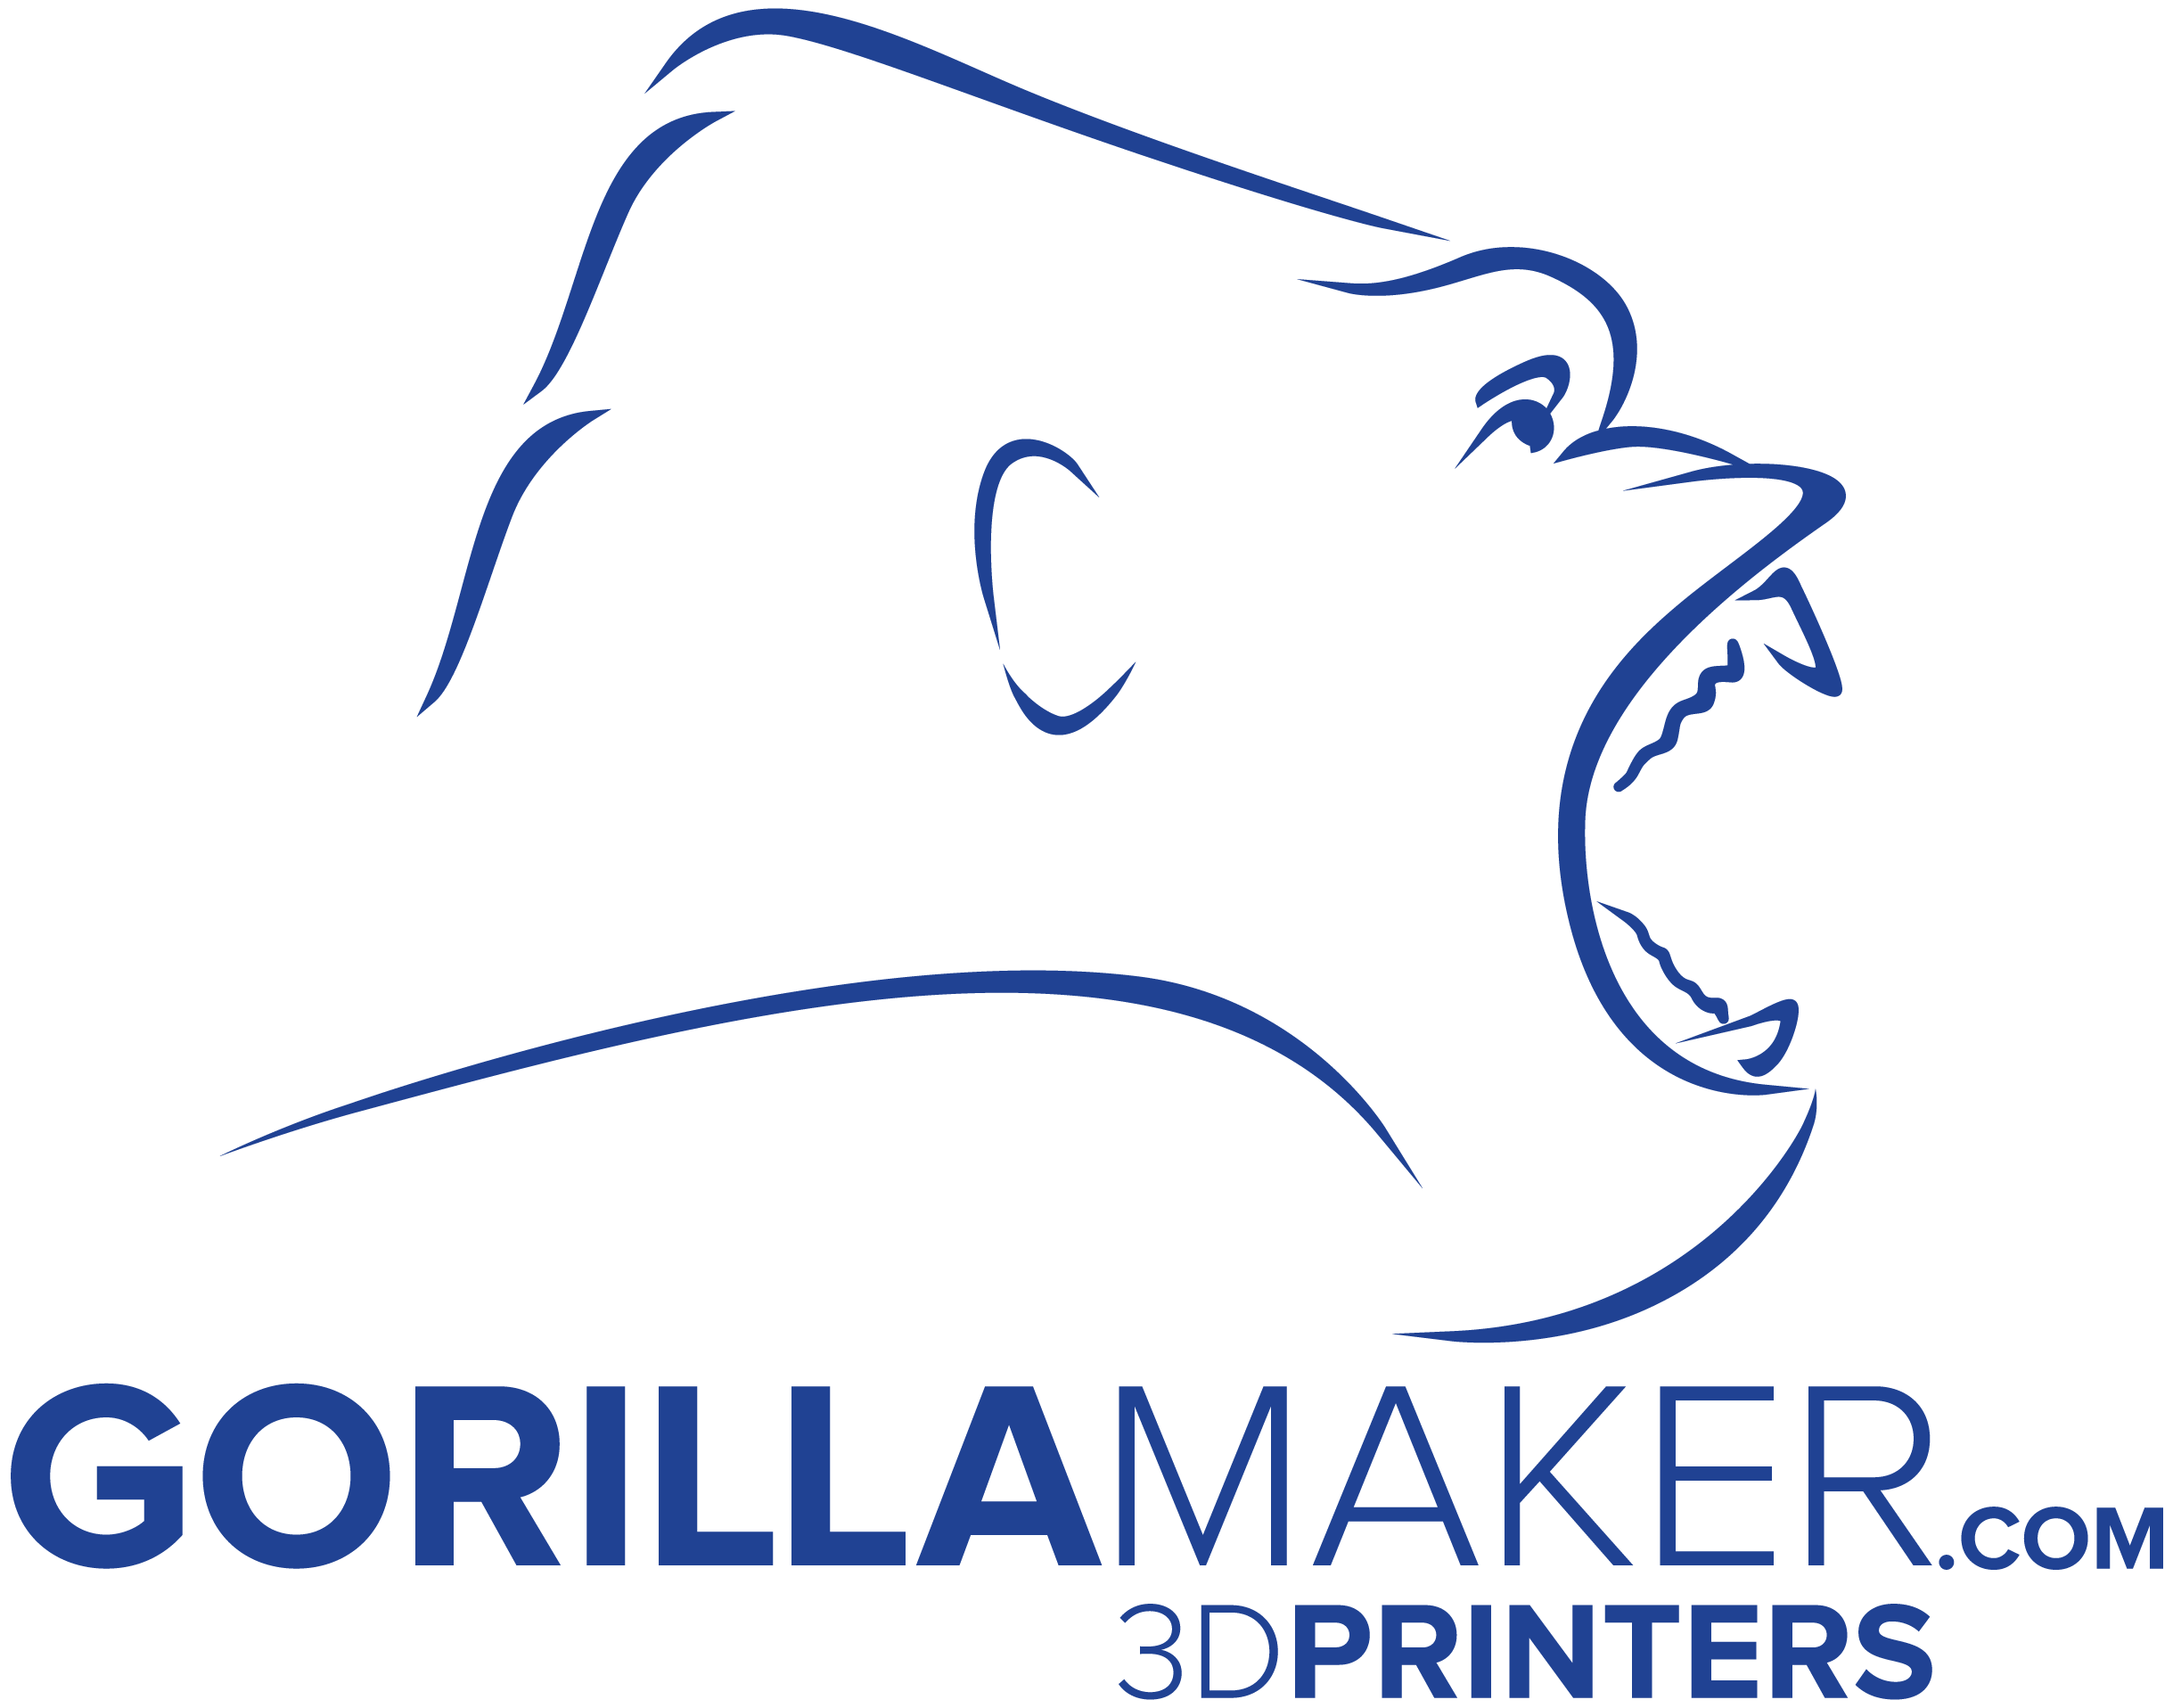 GorillaMaker.com 3d Printers